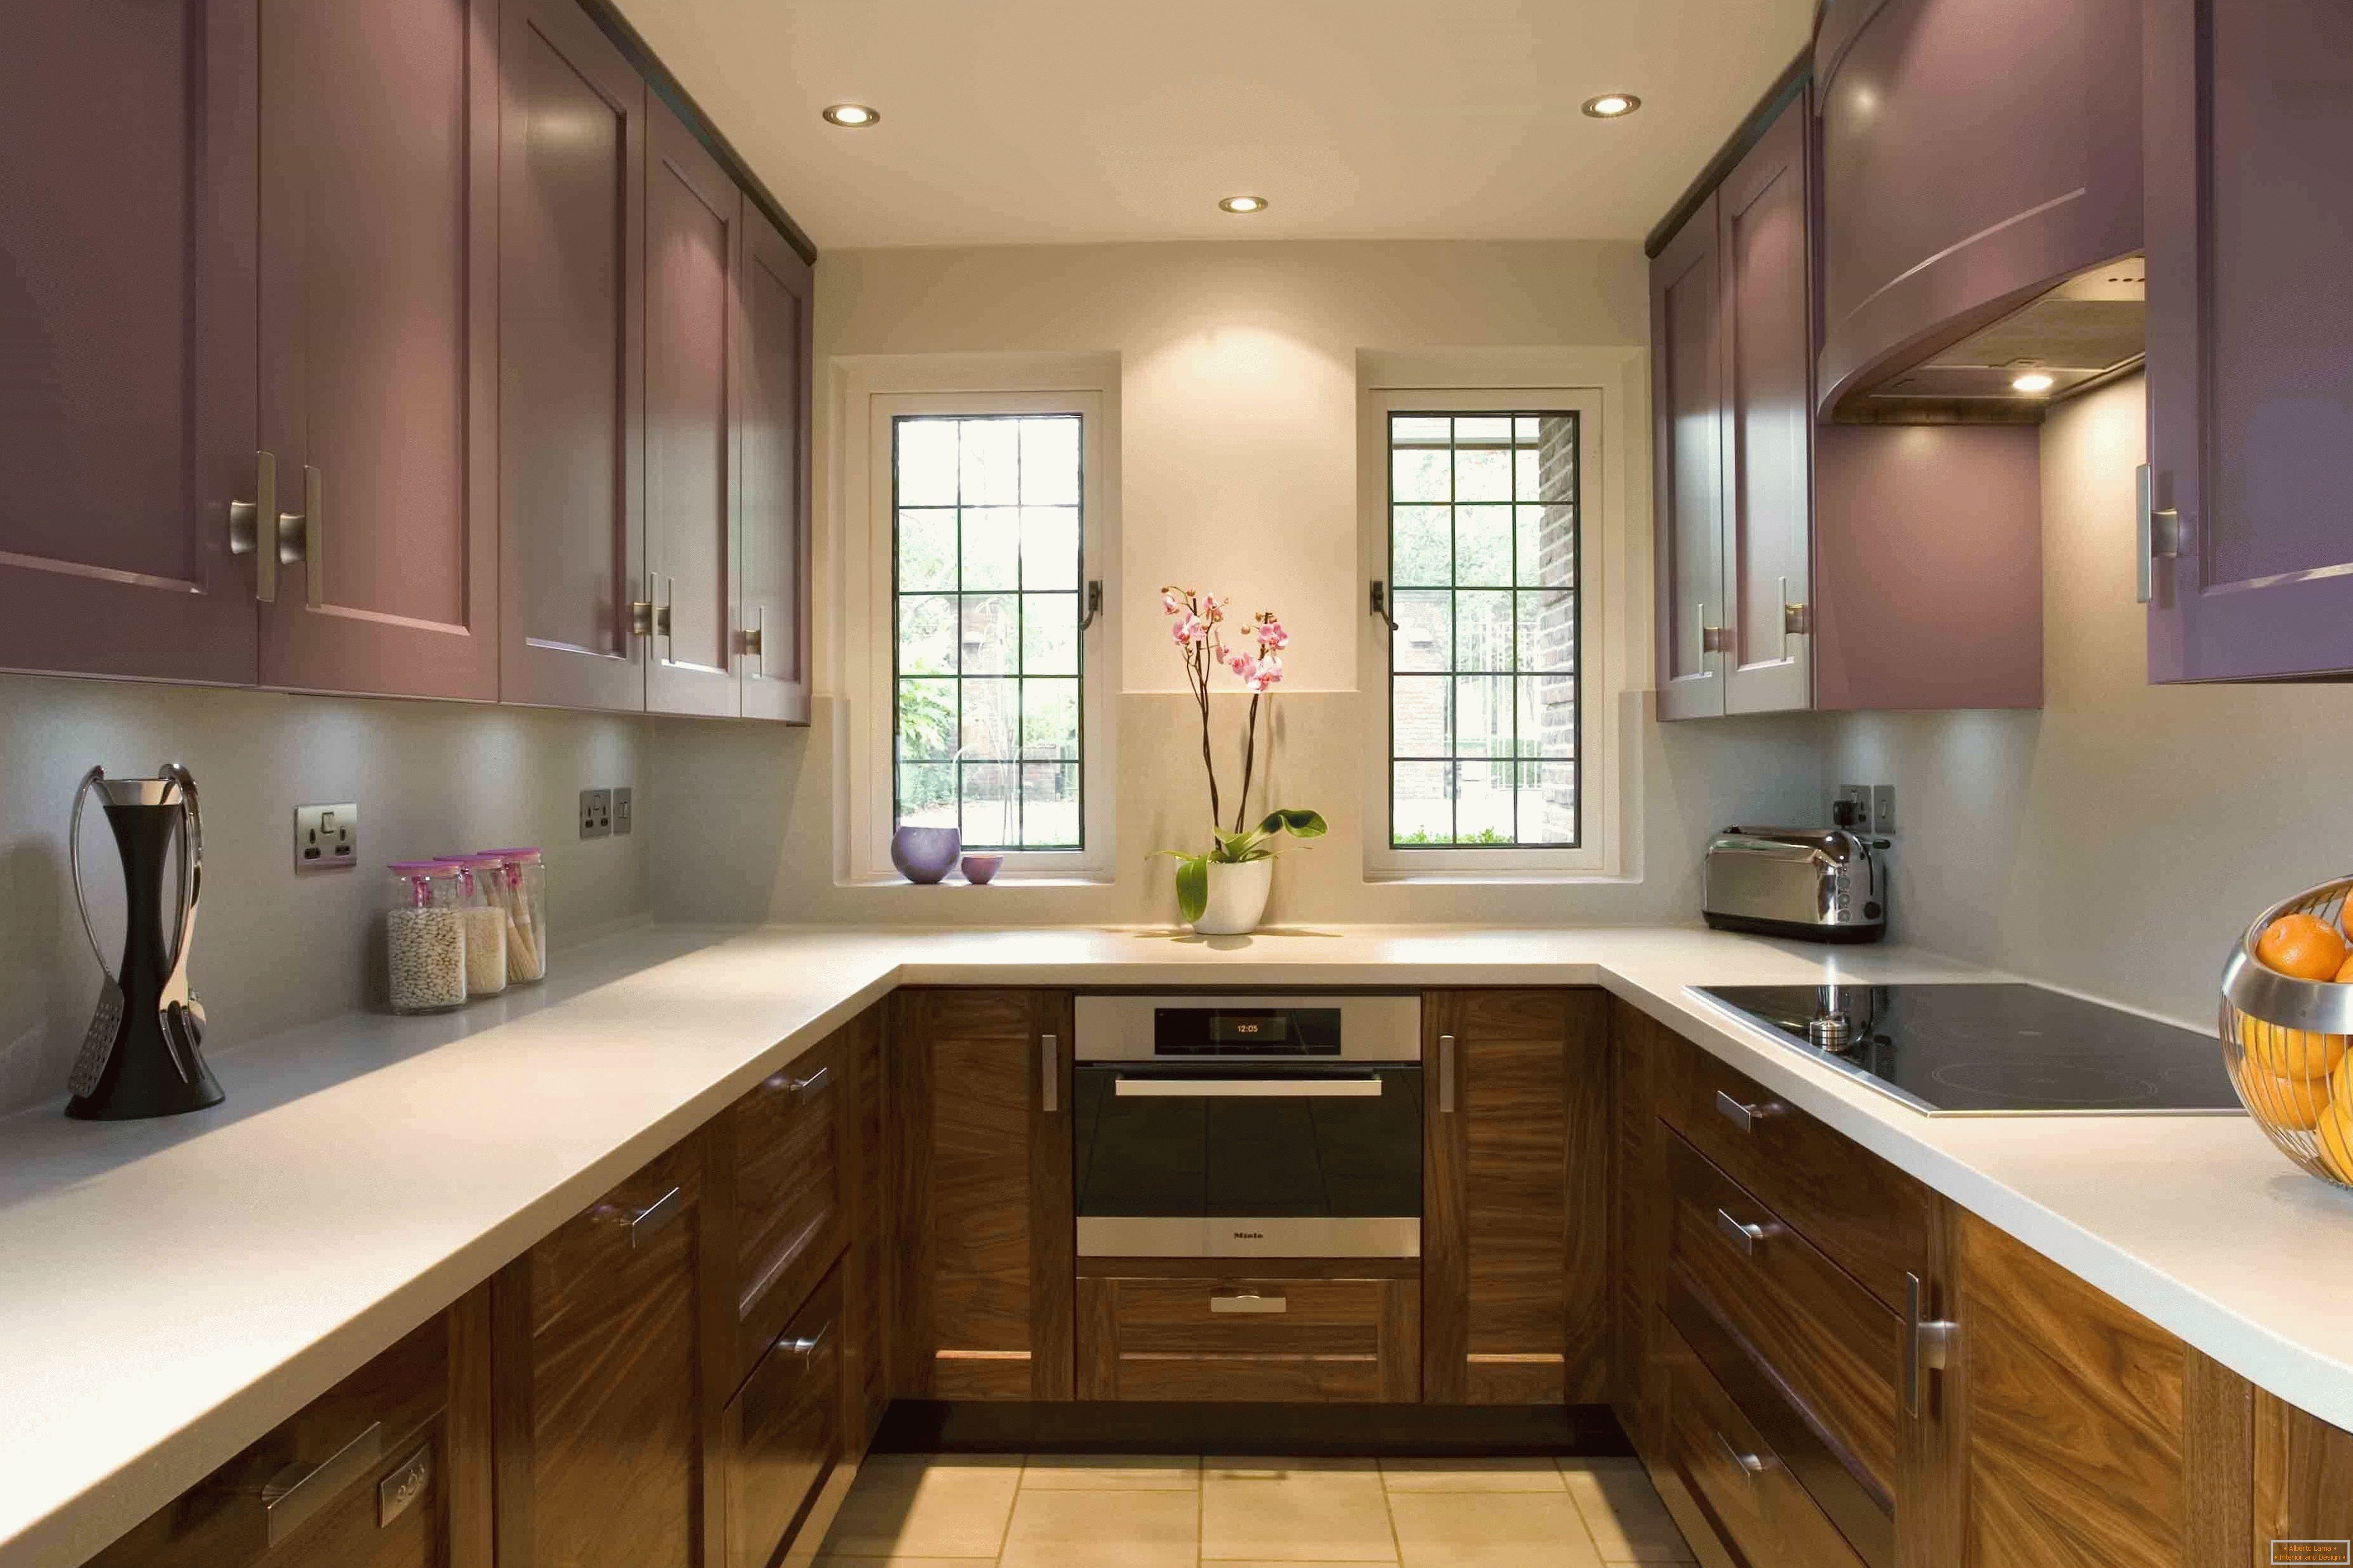 U alakú konyha lila színben kombinálva